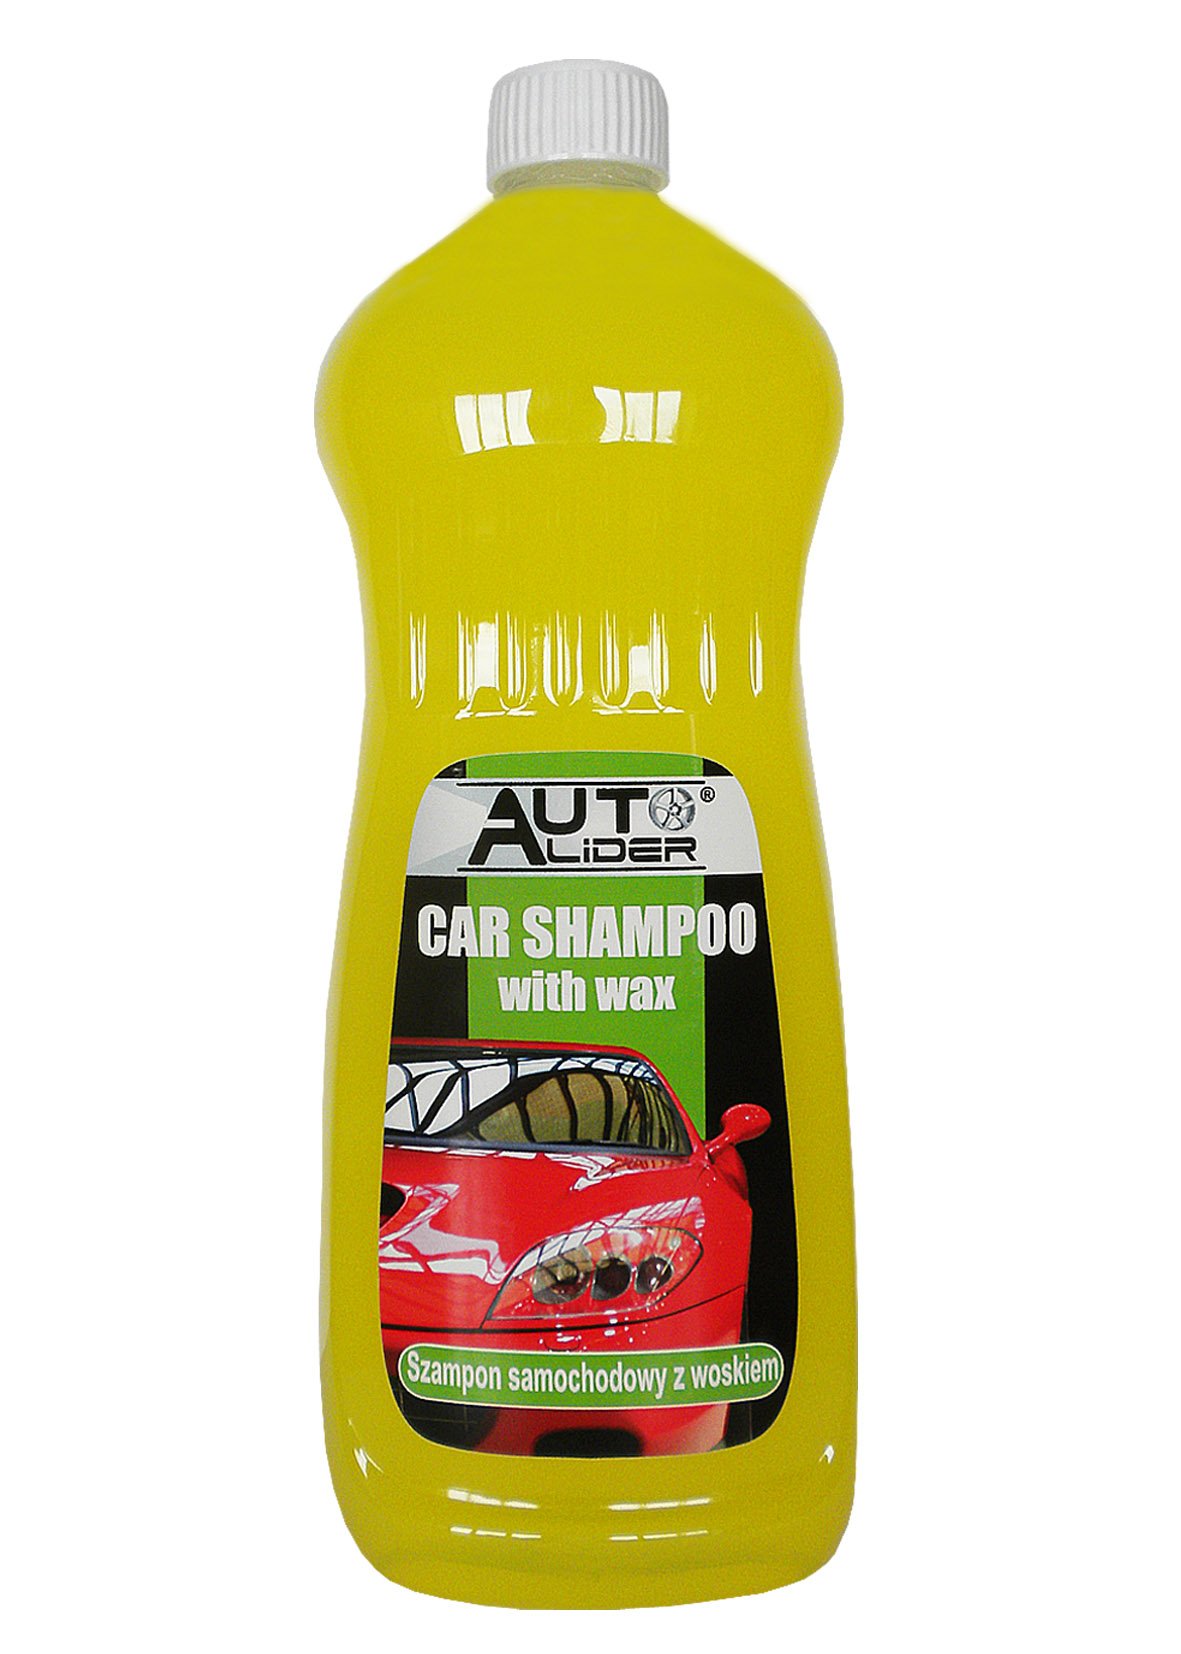 plak szampon samochodowy z woskiem jak uzywac